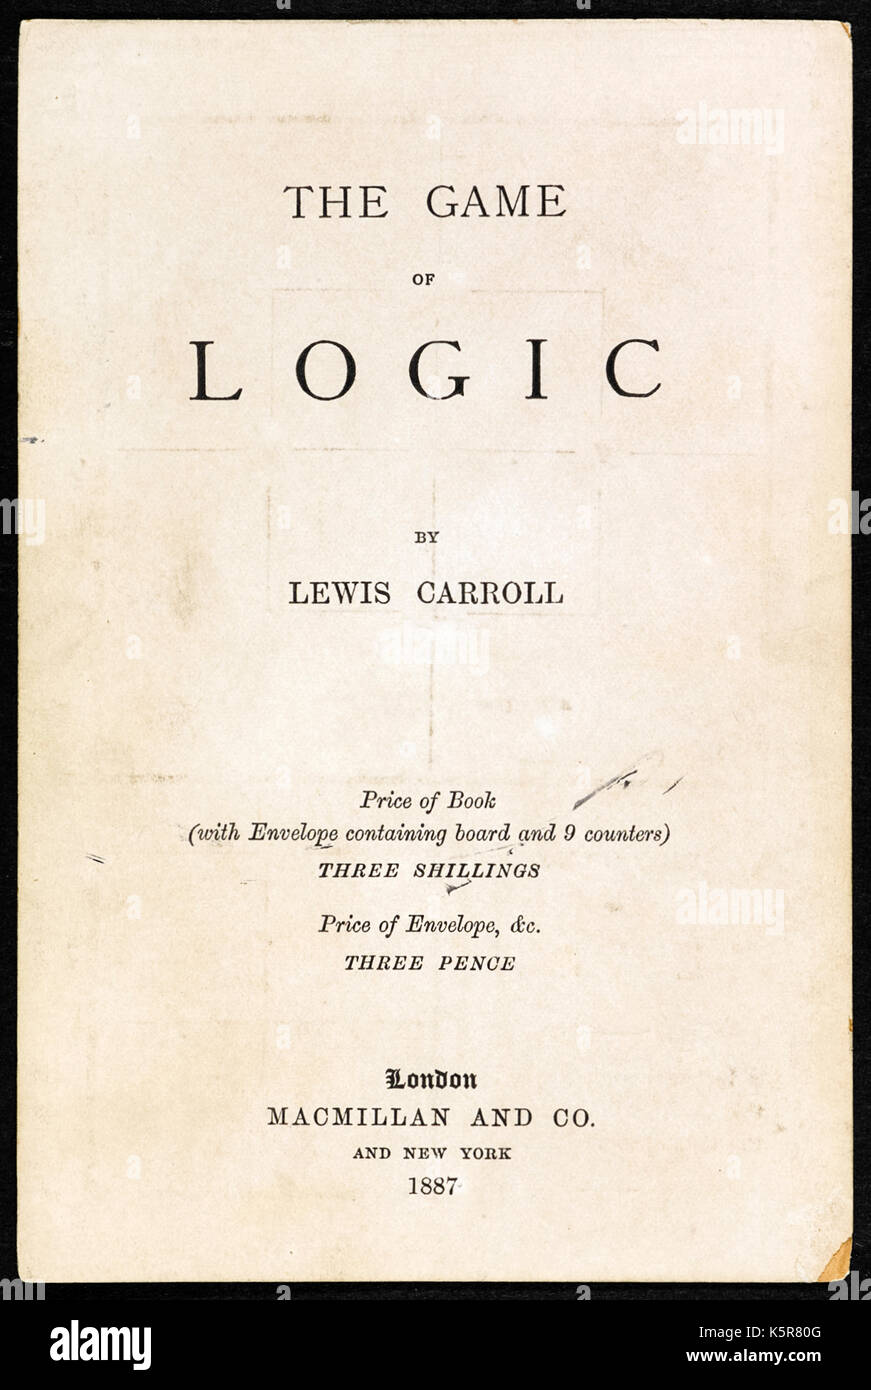 "Das Spiel der Logik' von Lewis Caroll, das Pseudonym von Charles Lutwidge Dodgson (1832-1898) im Jahr 1887. Dodgson war Mathematiker und dieses Spiel herausgefordert "Spieler" verschiedene logische Aussagen zu bezeichnen. Foto der Titelseite. Weitere Informationen finden Sie unten. Stockfoto